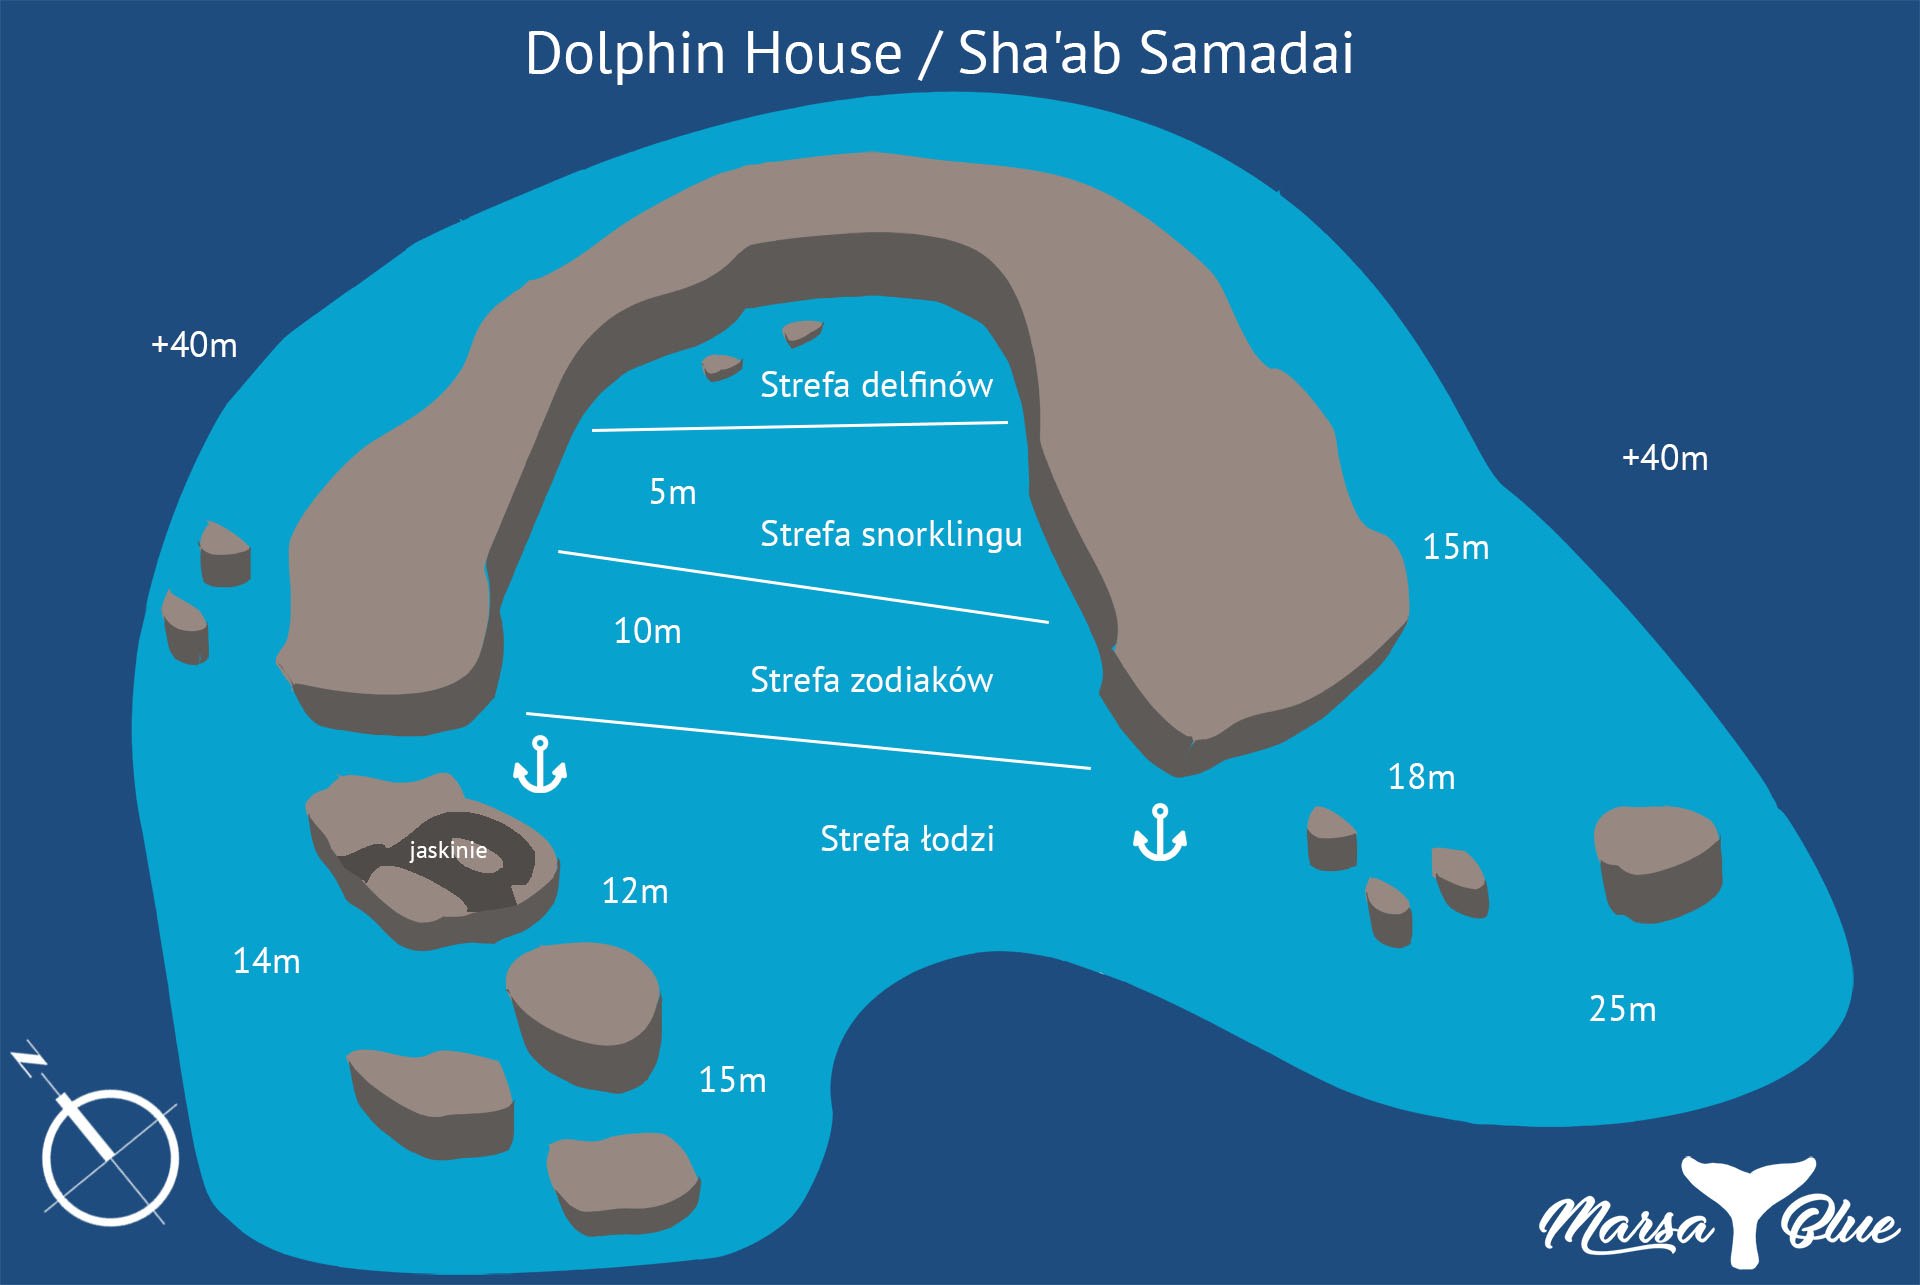 Dolphin House - Mapa spotu nurkowego